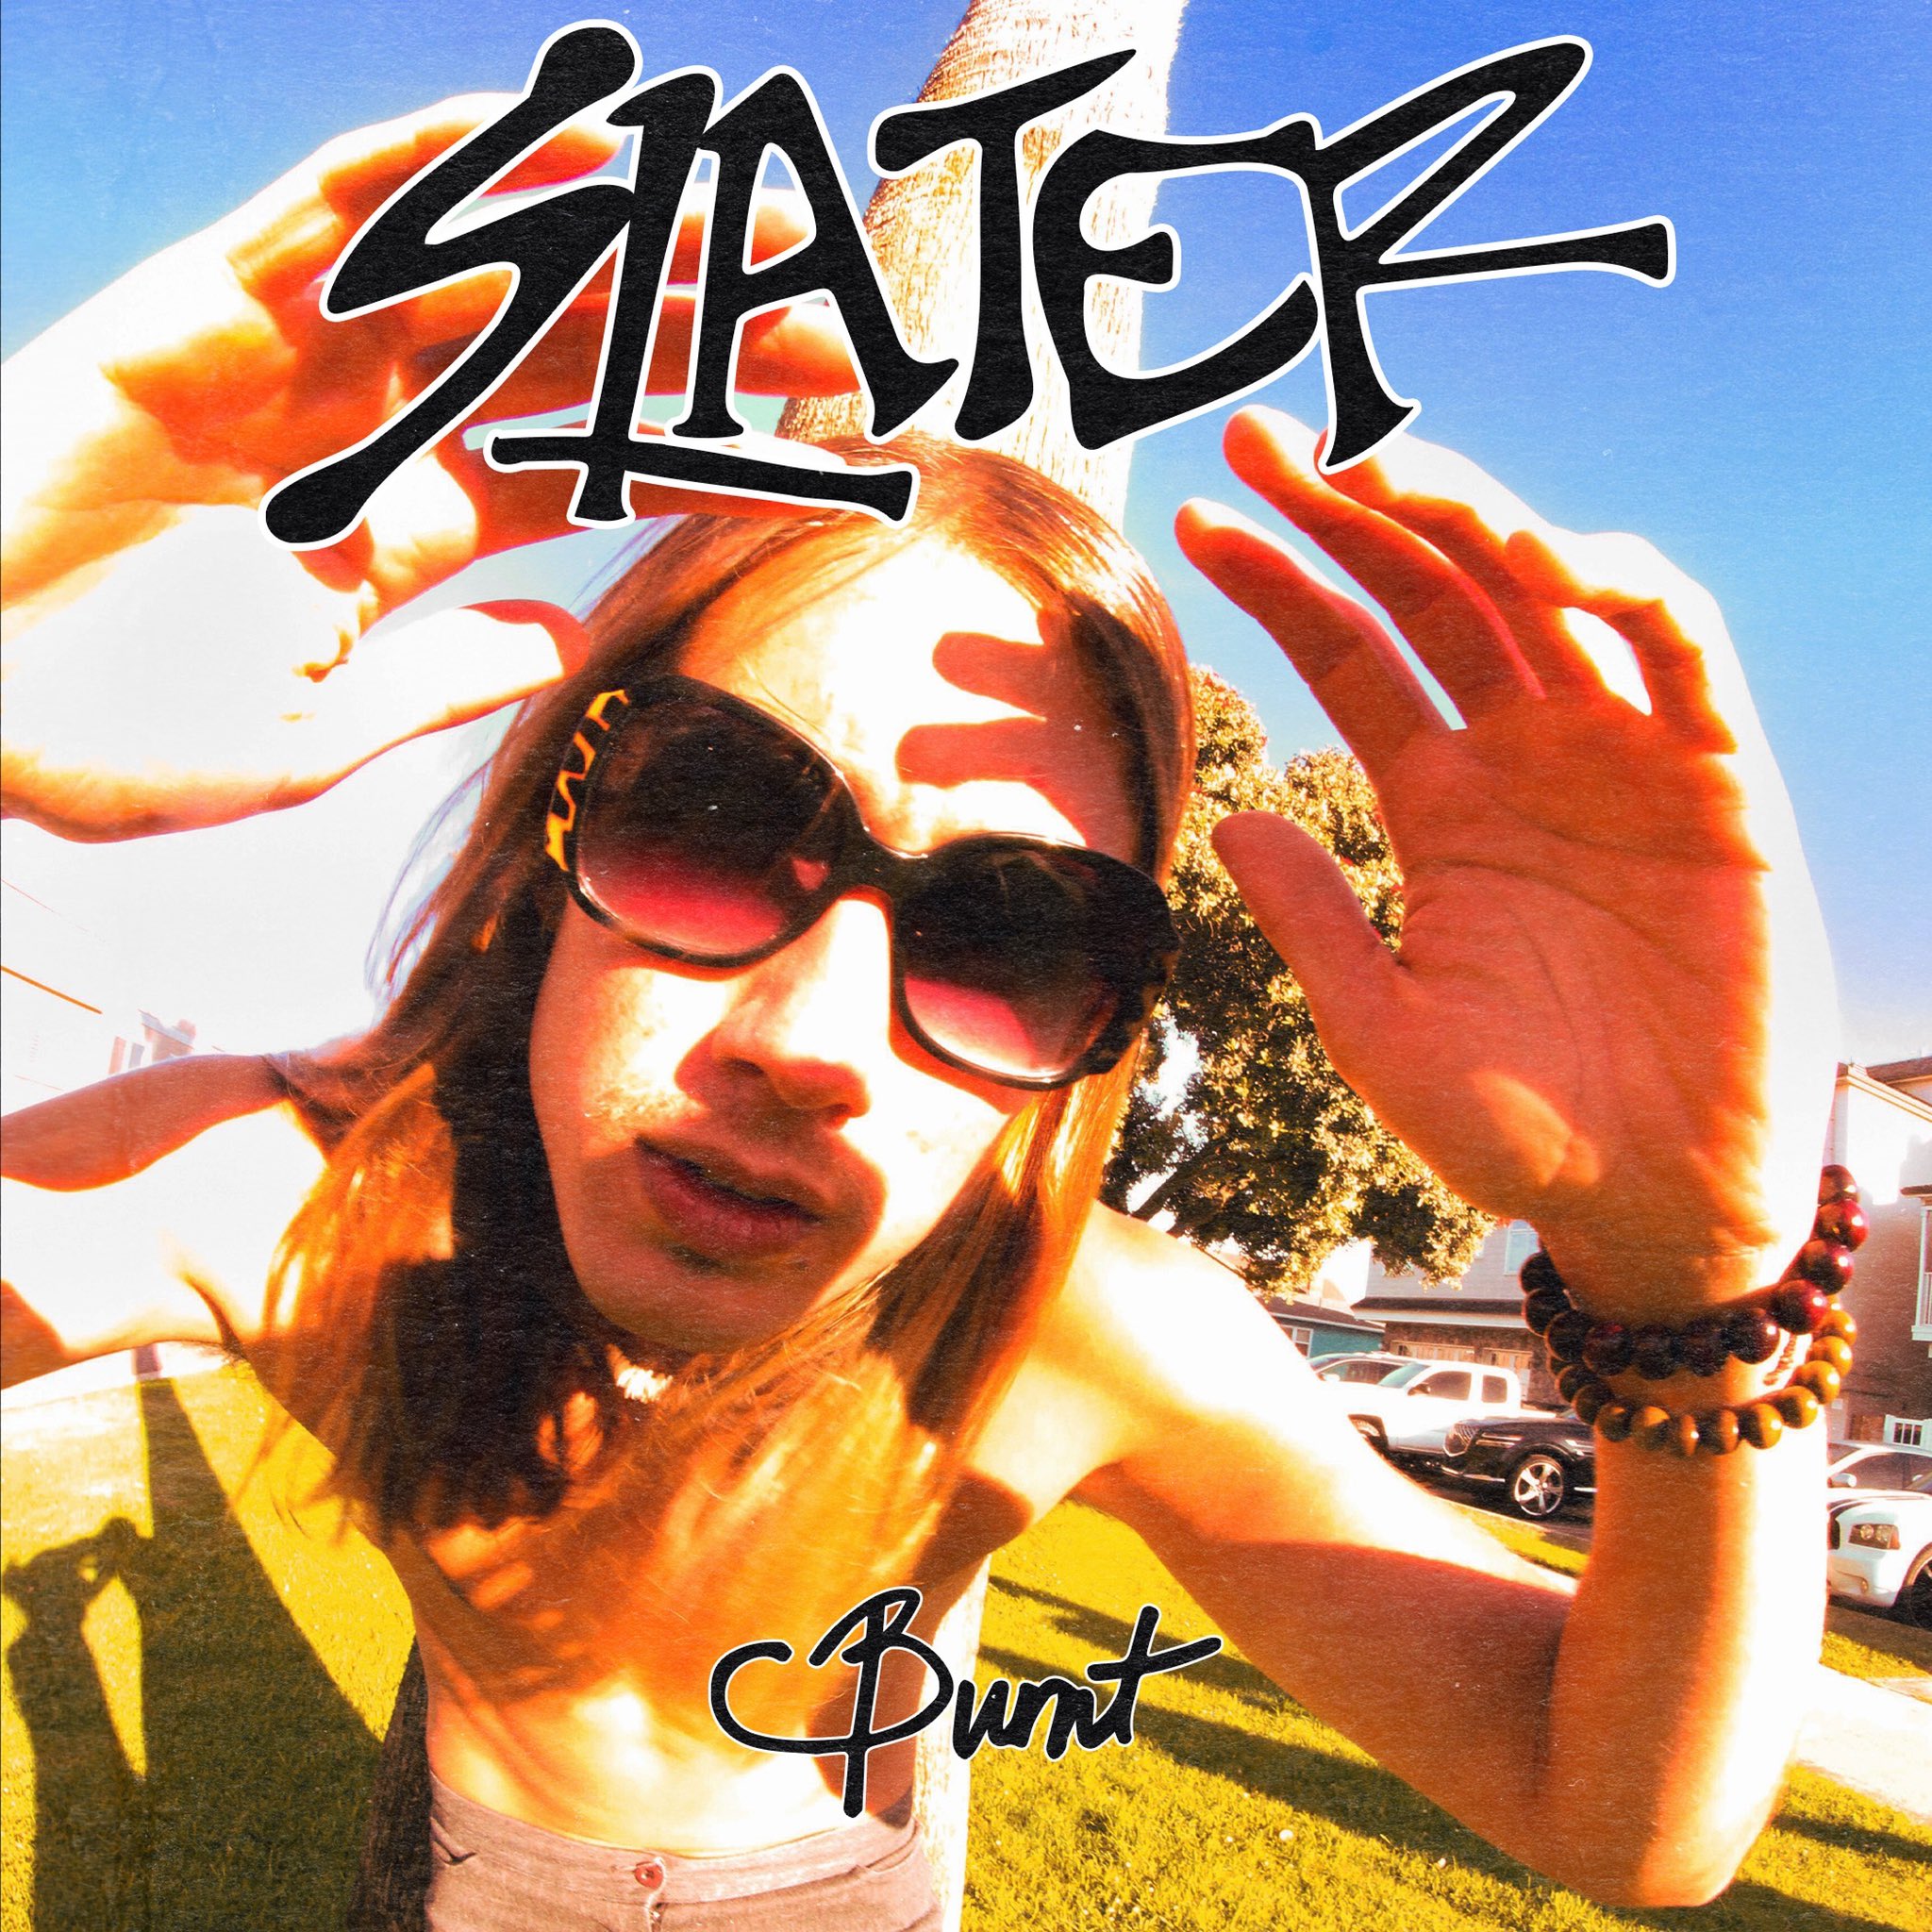 Slater Burnt cover artwork